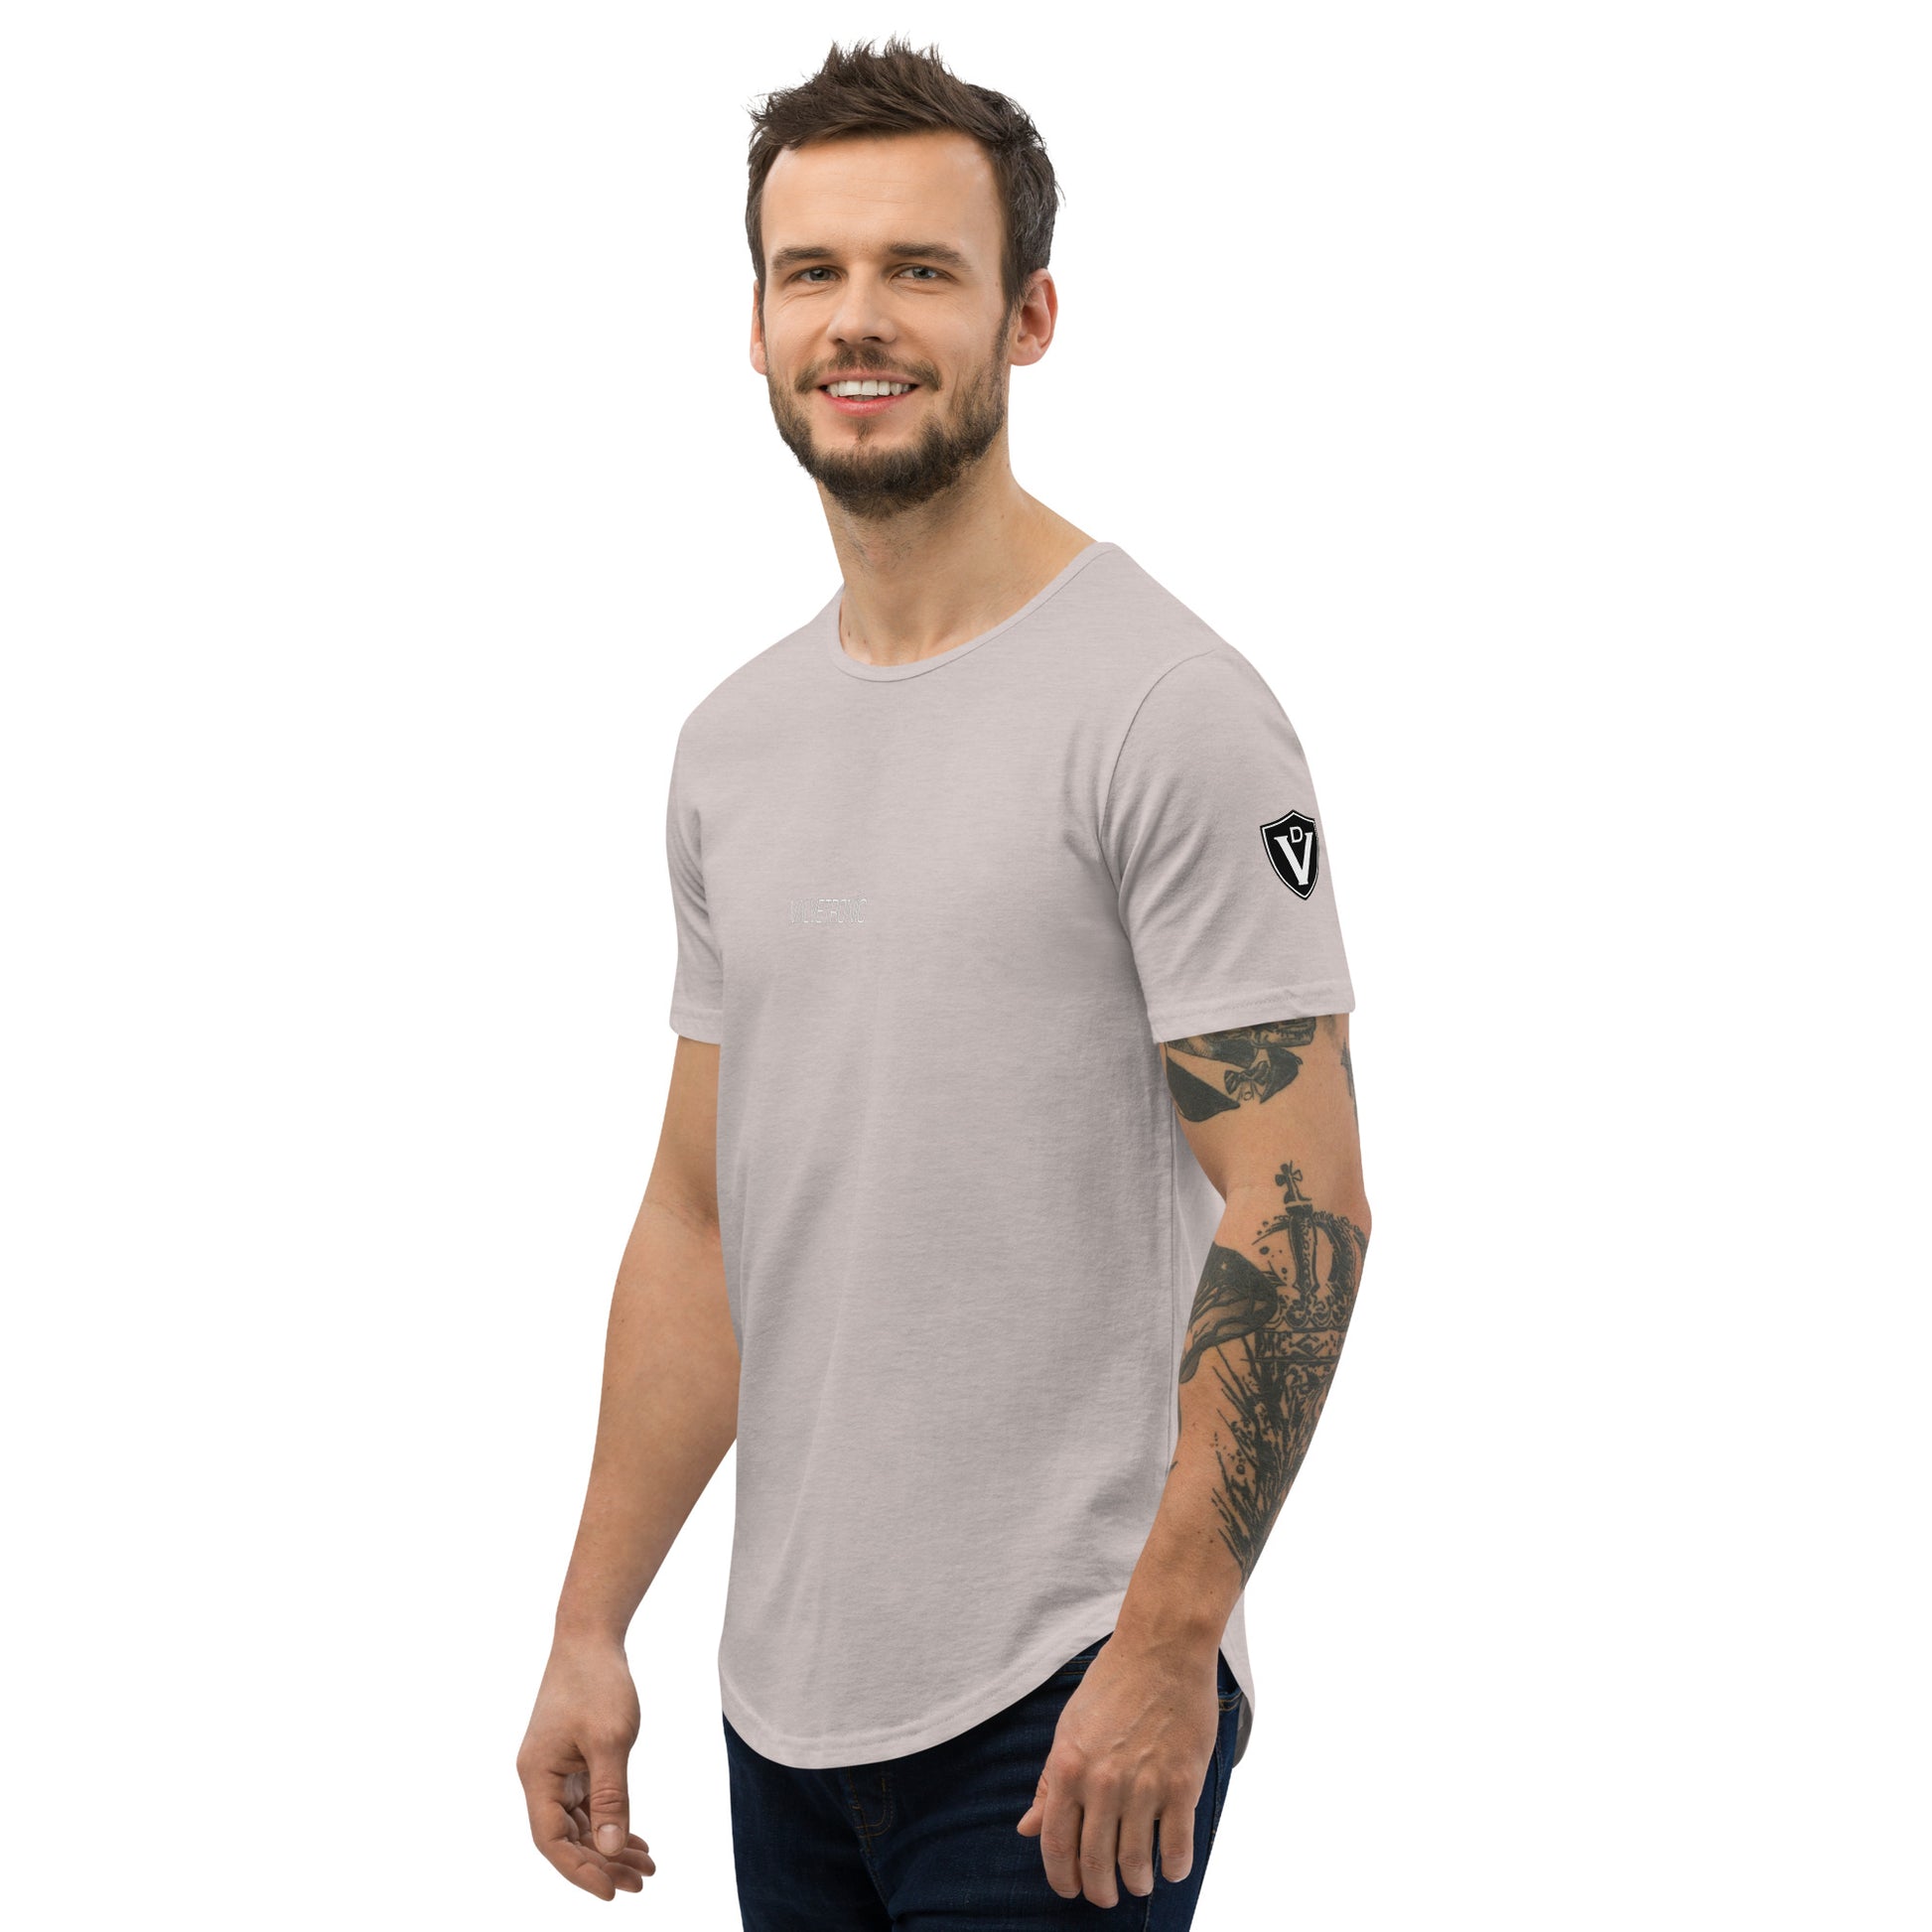 Valvetronic Men's Curved Hem T-Shirt white text – Valvetronic Designs